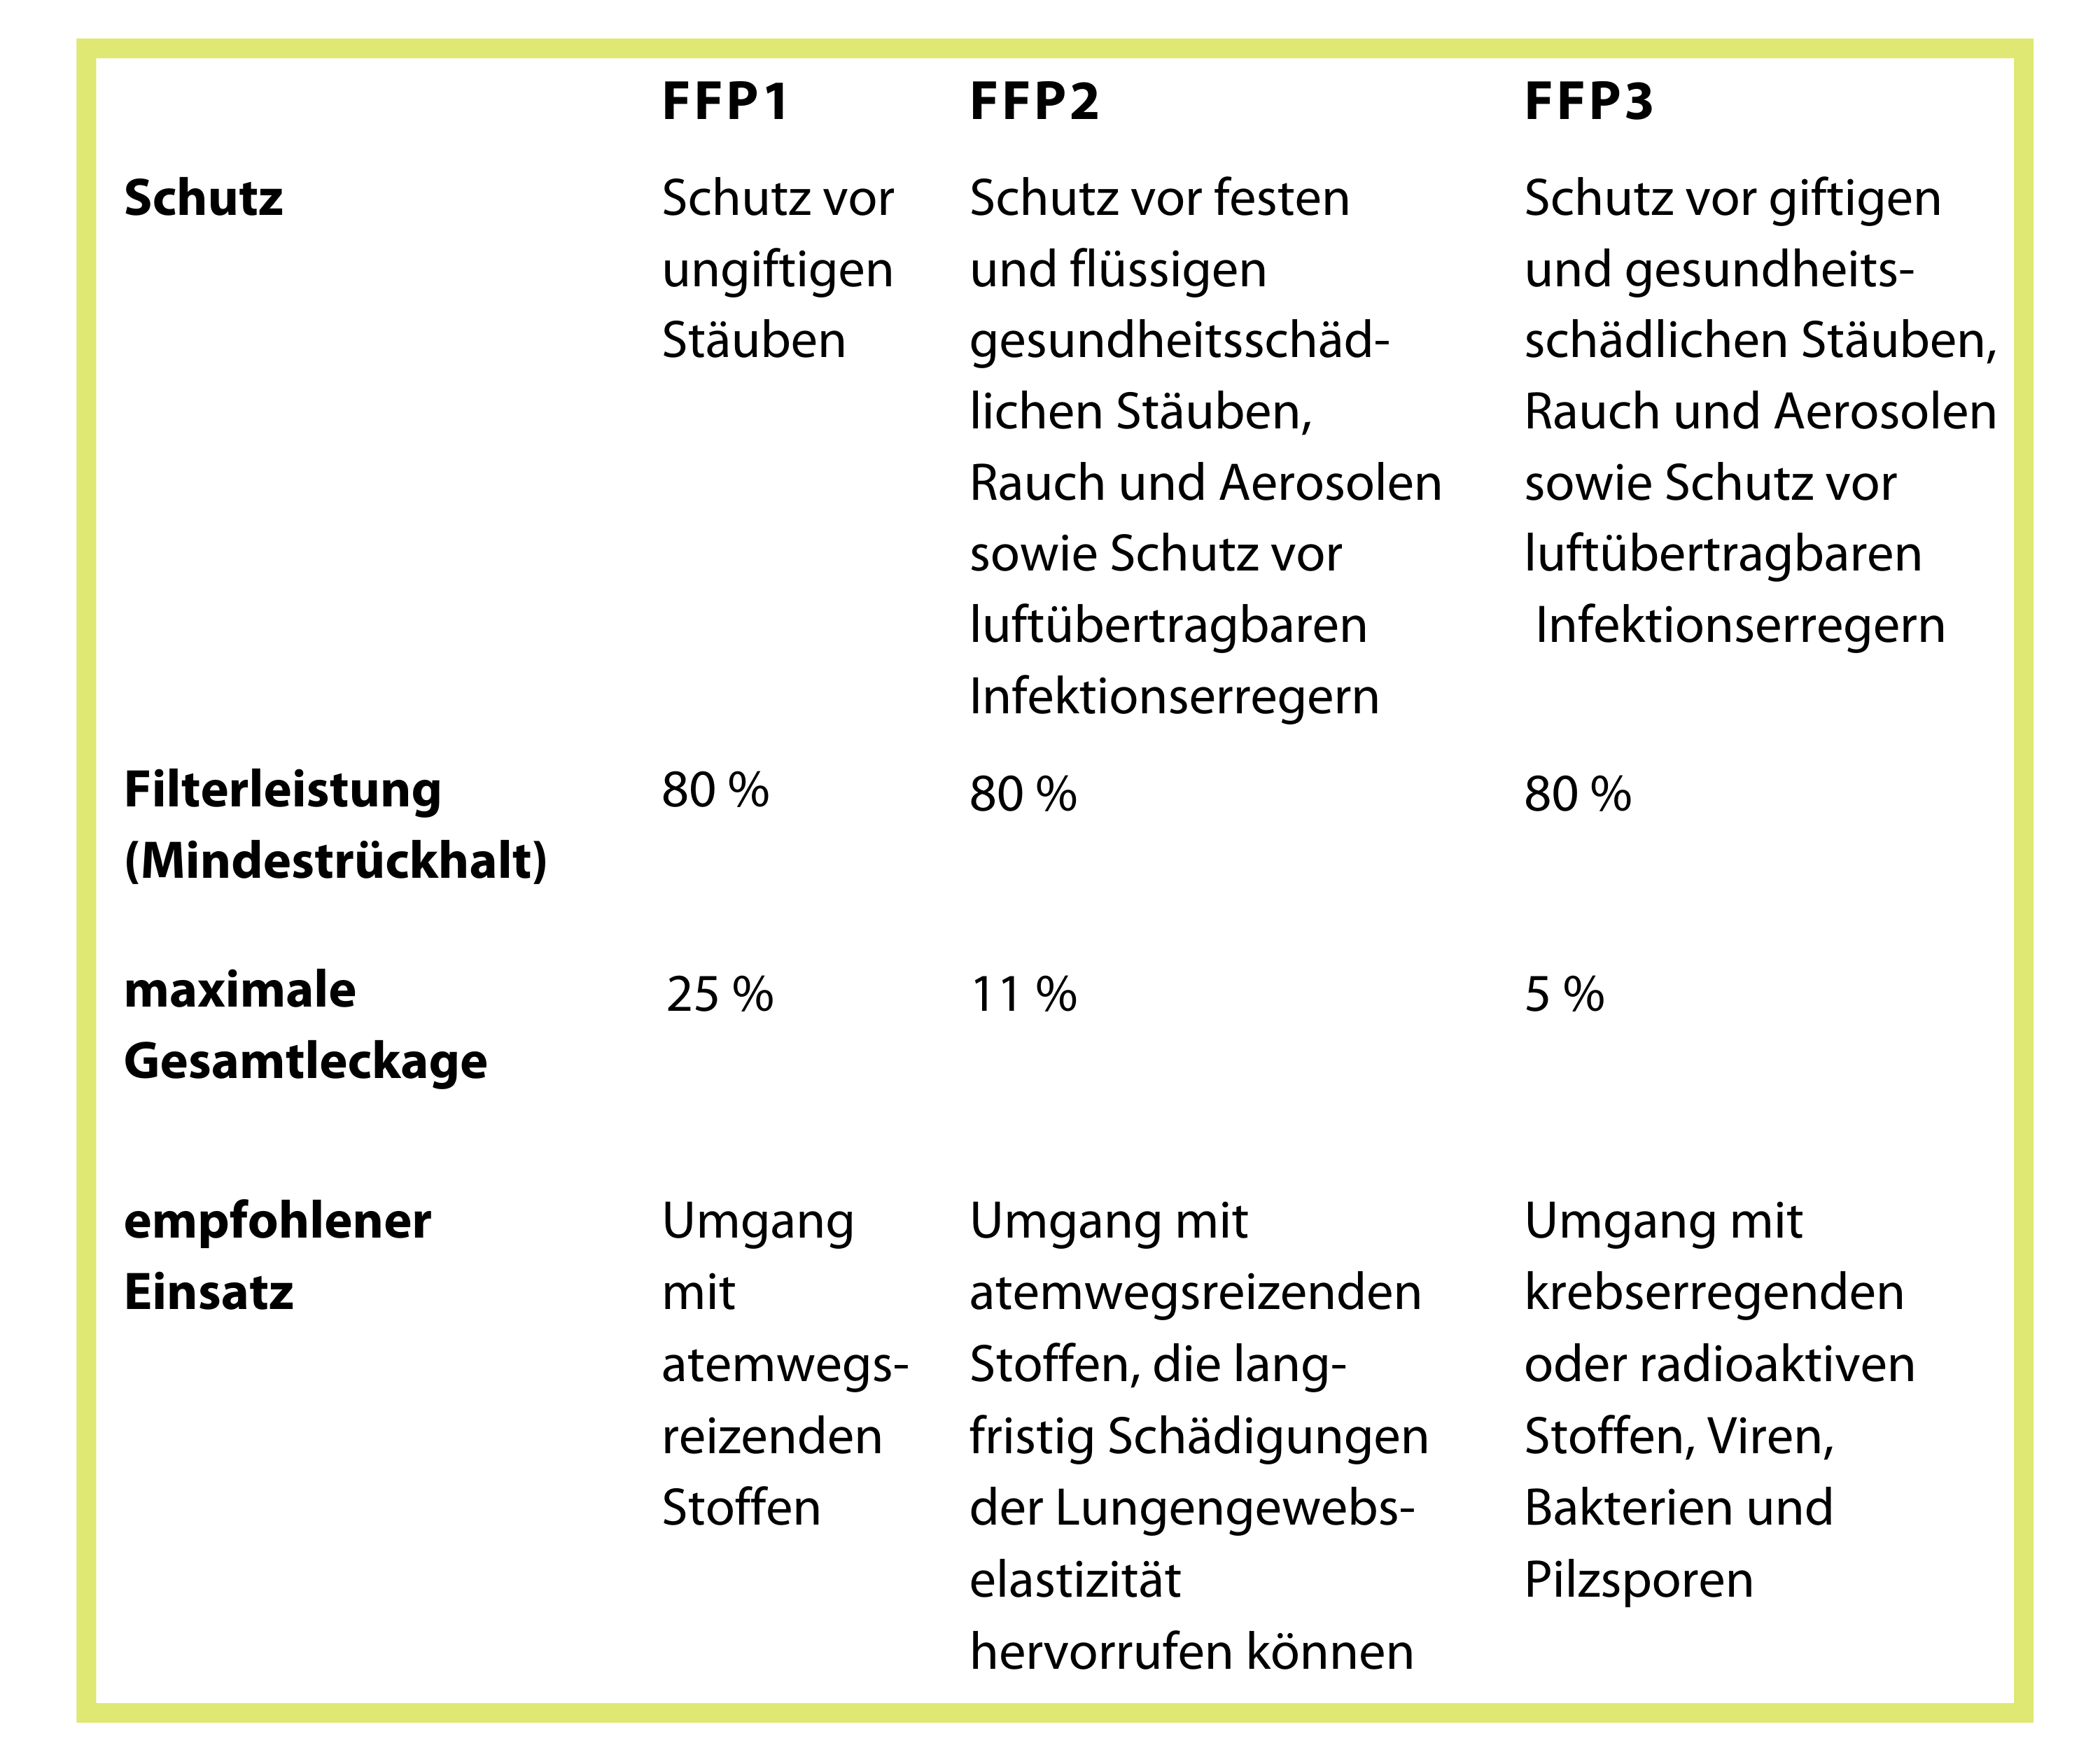 FFP Filterklassen mit unterschiedlicher Leistung